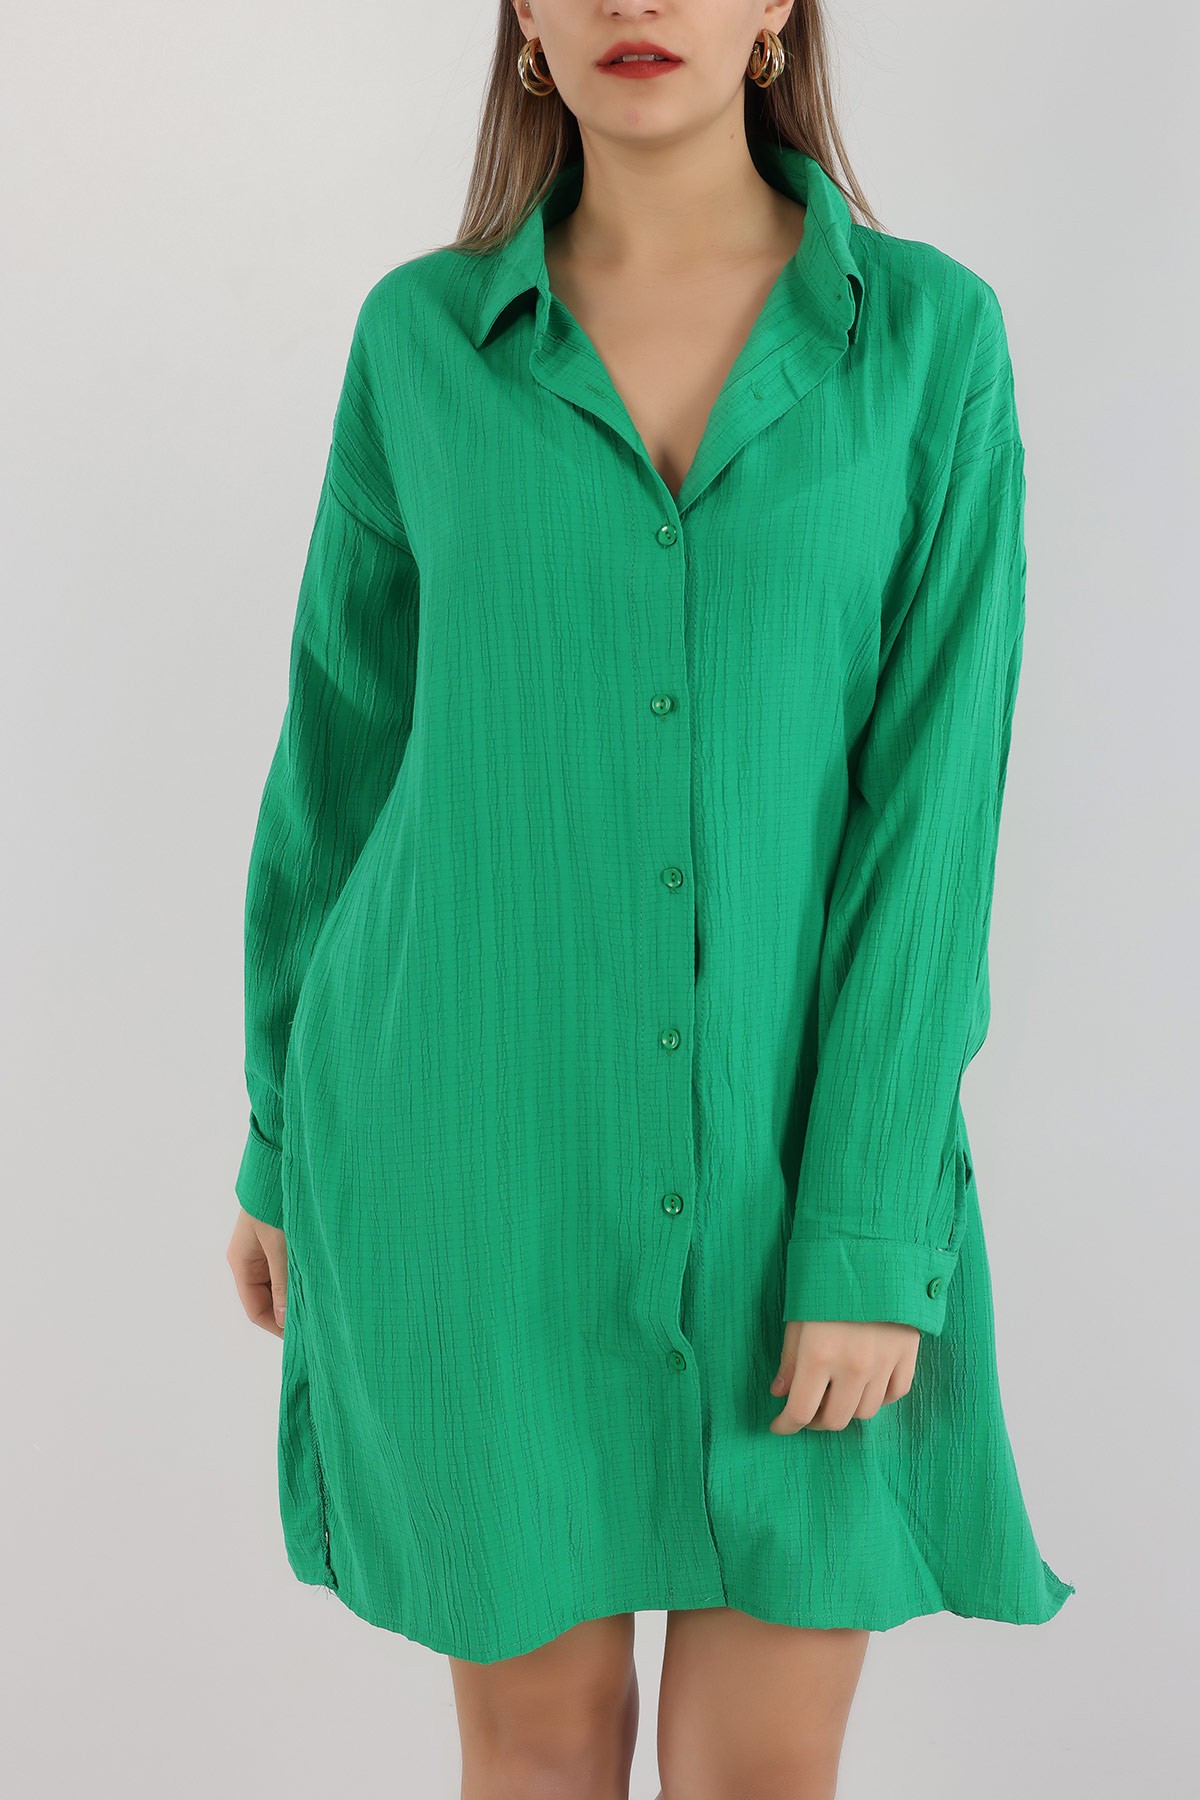 Yeşil Keten Dokuma Gömlek Tunik 165256